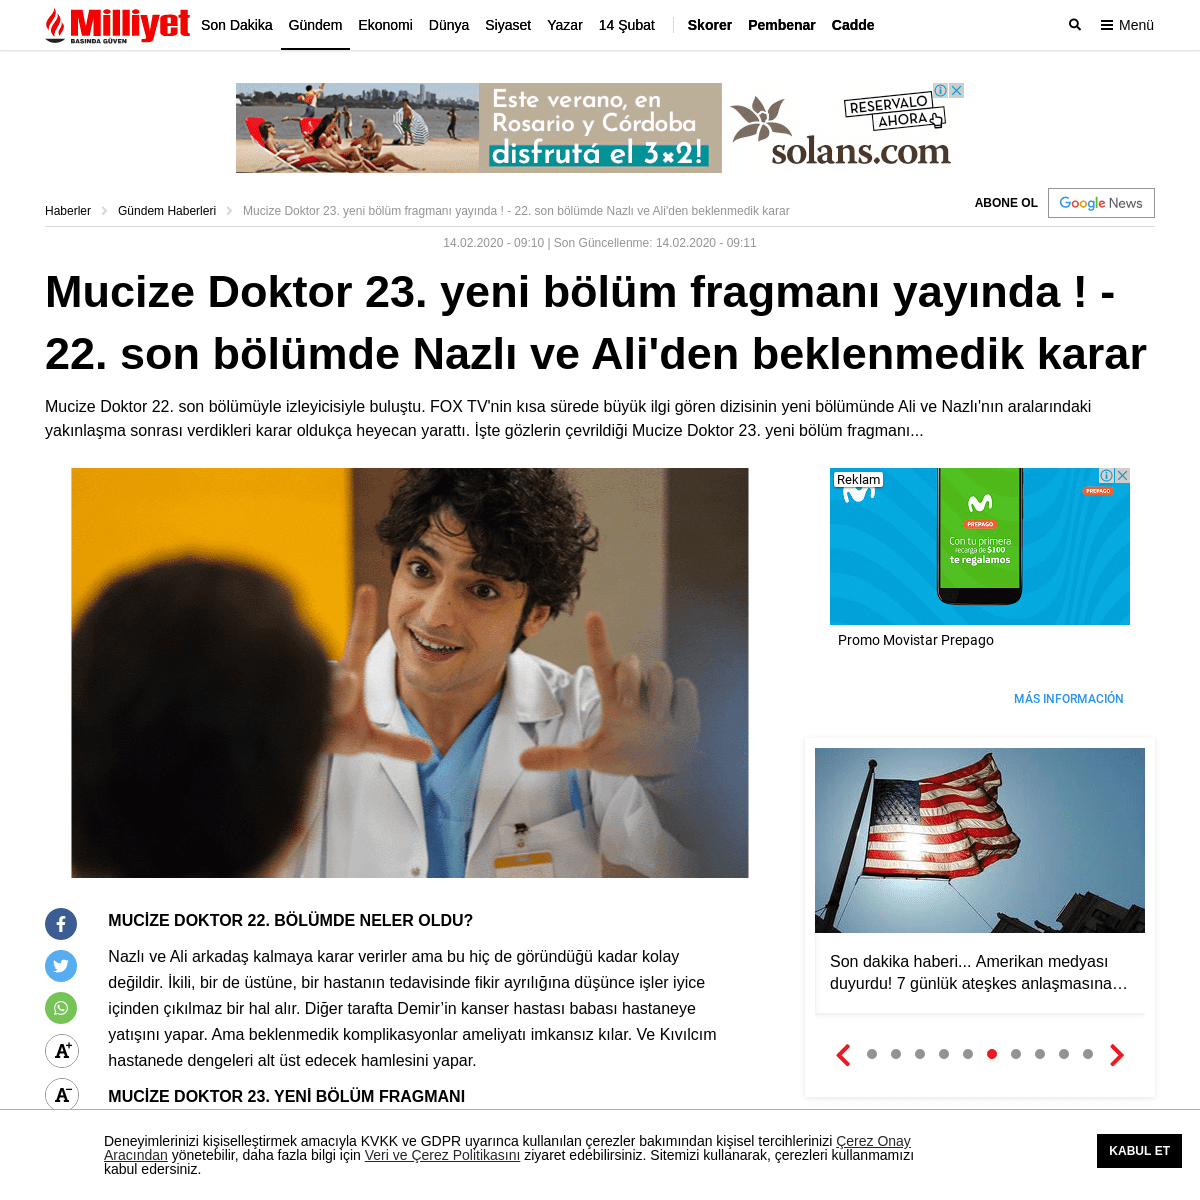 A complete backup of www.milliyet.com.tr/gundem/mucize-doktor-23-yeni-bolum-fragmani-yayinda-22-son-bolumde-nazli-ve-aliden-bekl